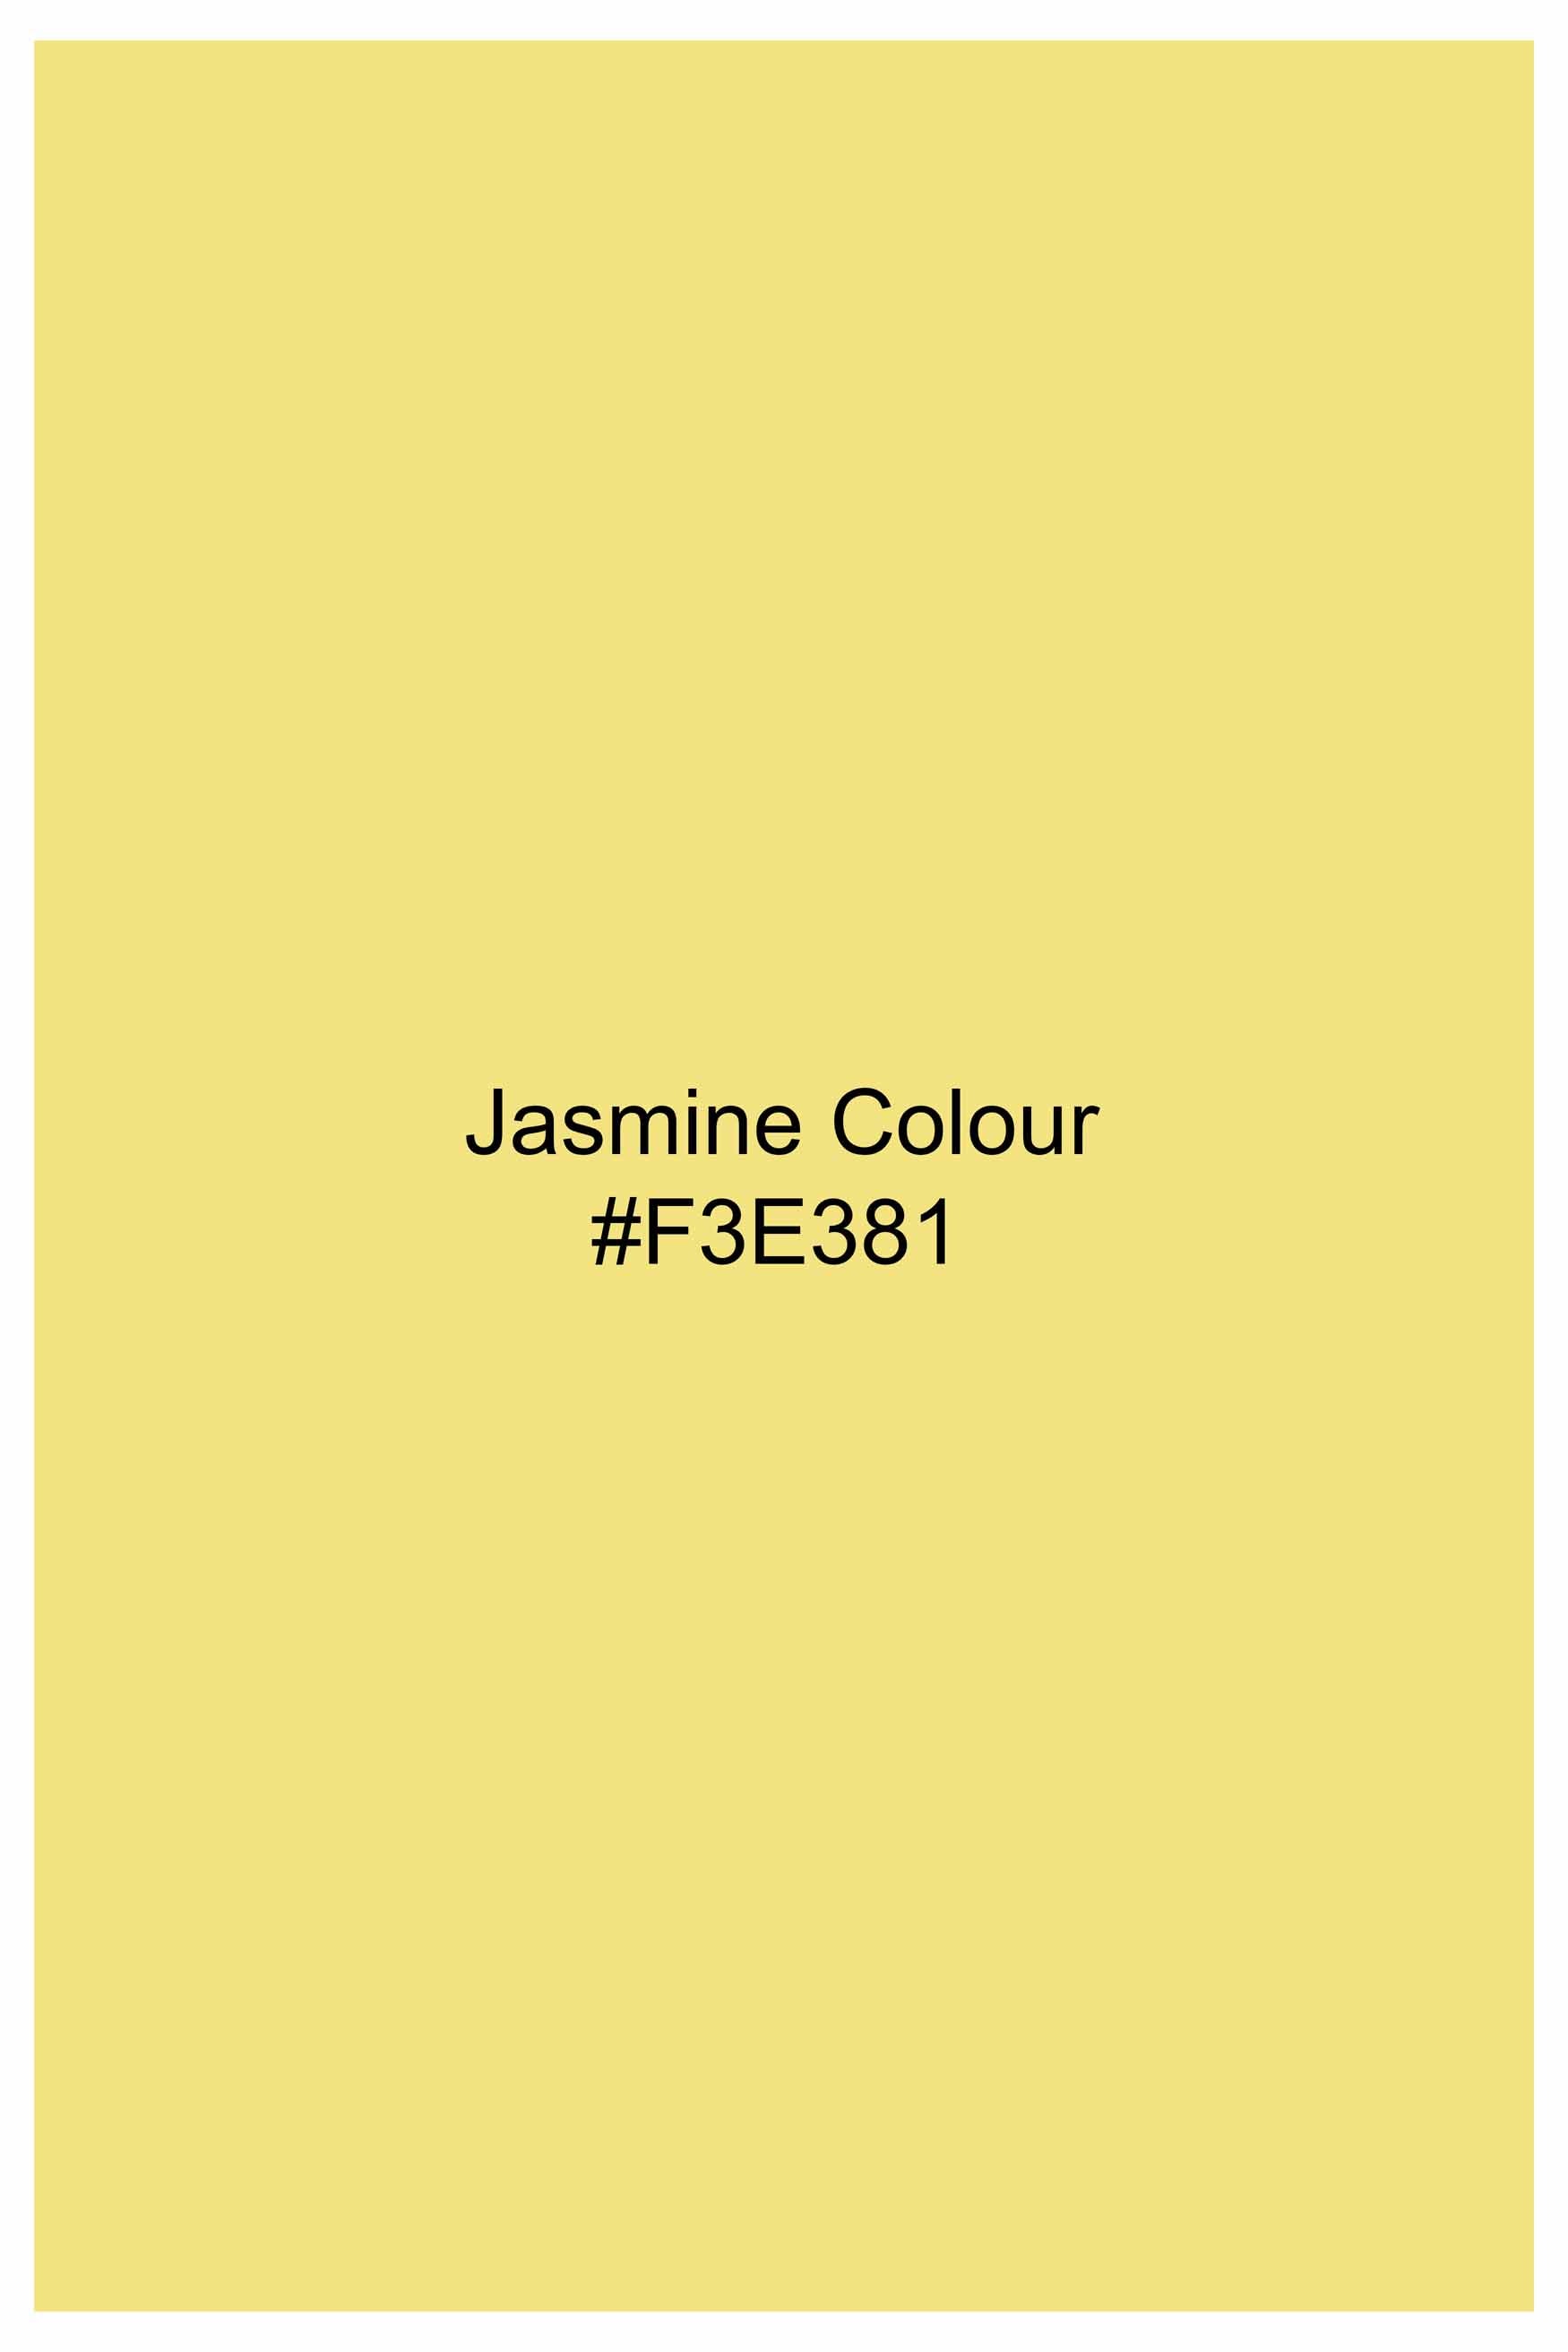 Jasmine Yellow Subtle Sheen Super Soft Premium Cotton Shirt 11439-BD-YL-38, 11439-BD-YL-H-38, 11439-BD-YL-39, 11439-BD-YL-H-39, 11439-BD-YL-40, 11439-BD-YL-H-40, 11439-BD-YL-42, 11439-BD-YL-H-42, 11439-BD-YL-44, 11439-BD-YL-H-44, 11439-BD-YL-46, 11439-BD-YL-H-46, 11439-BD-YL-48, 11439-BD-YL-H-48, 11439-BD-YL-50, 11439-BD-YL-H-50, 11439-BD-YL-52, 11439-BD-YL-H-52